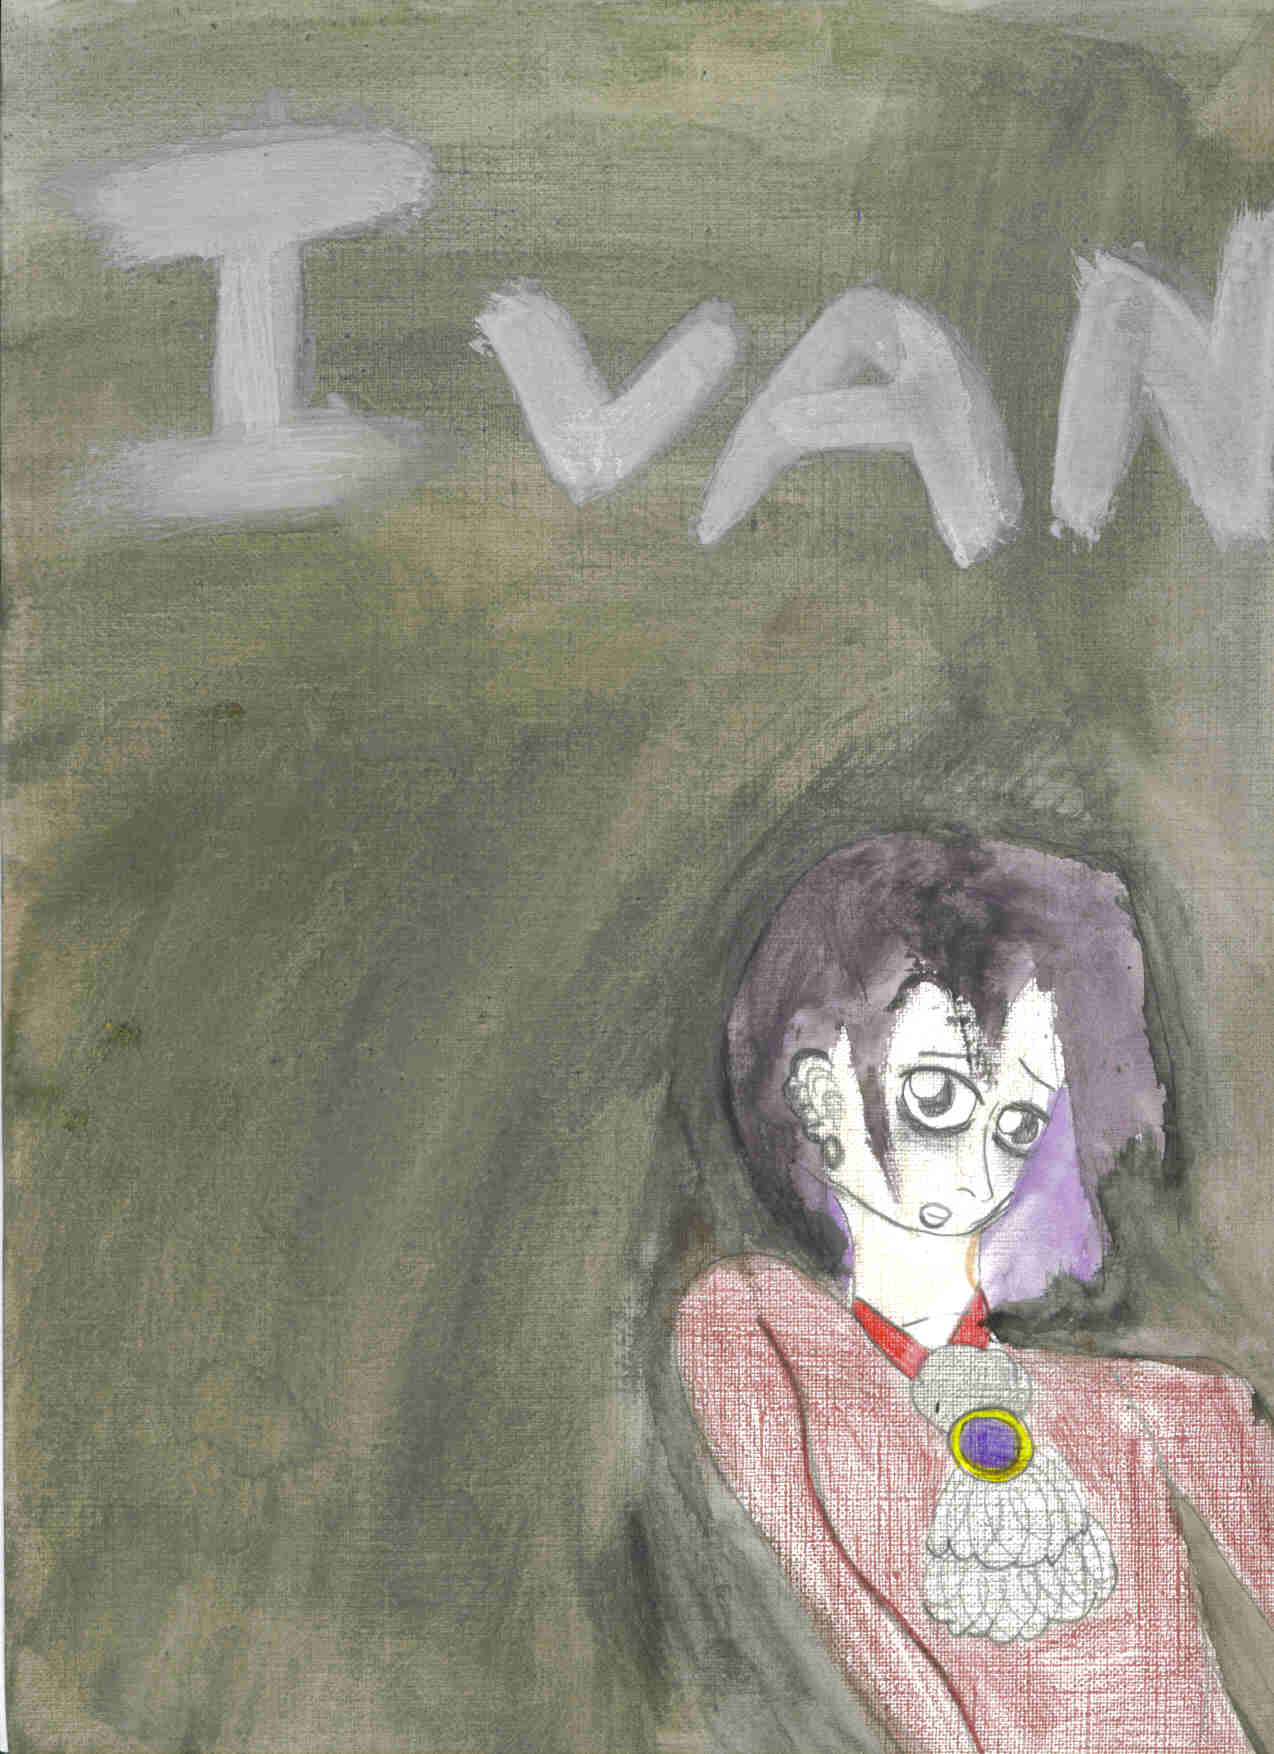 Dead Little Doll-Ivan by Weevil_Underwood